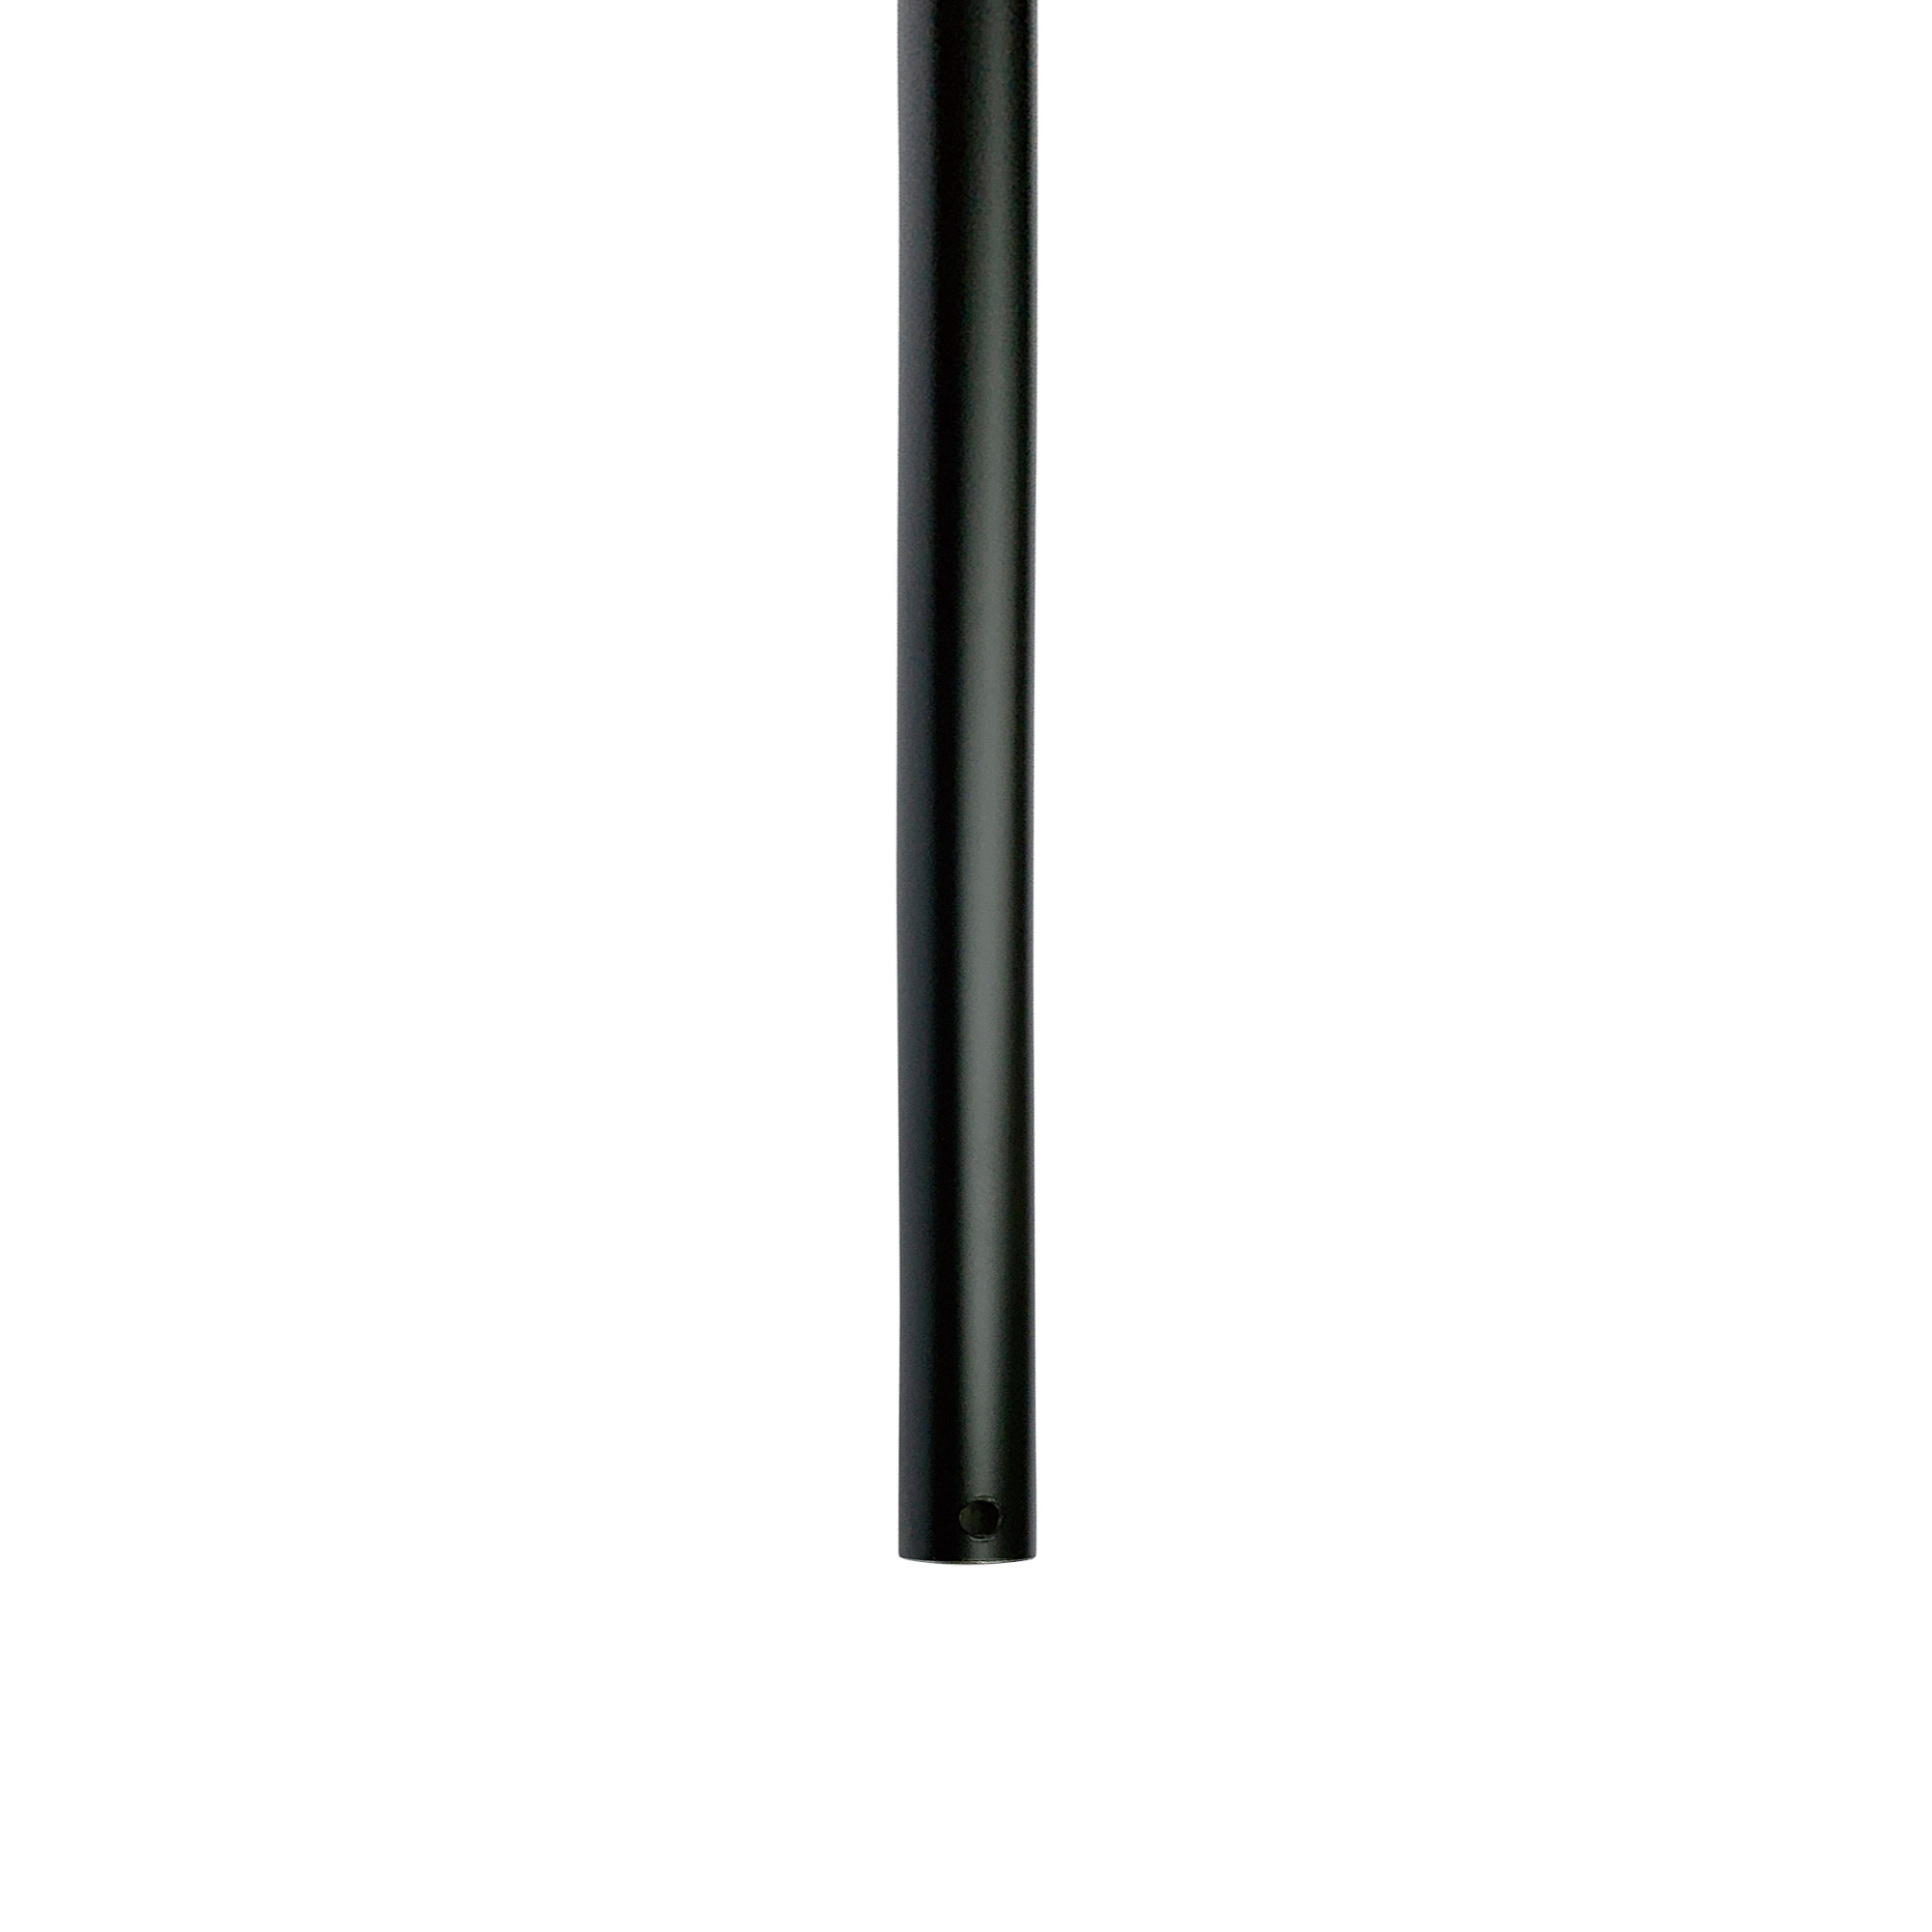 アイアンハンガーパイプ 吊りパイプ H500用 ブラック PS-HB008-31-G141